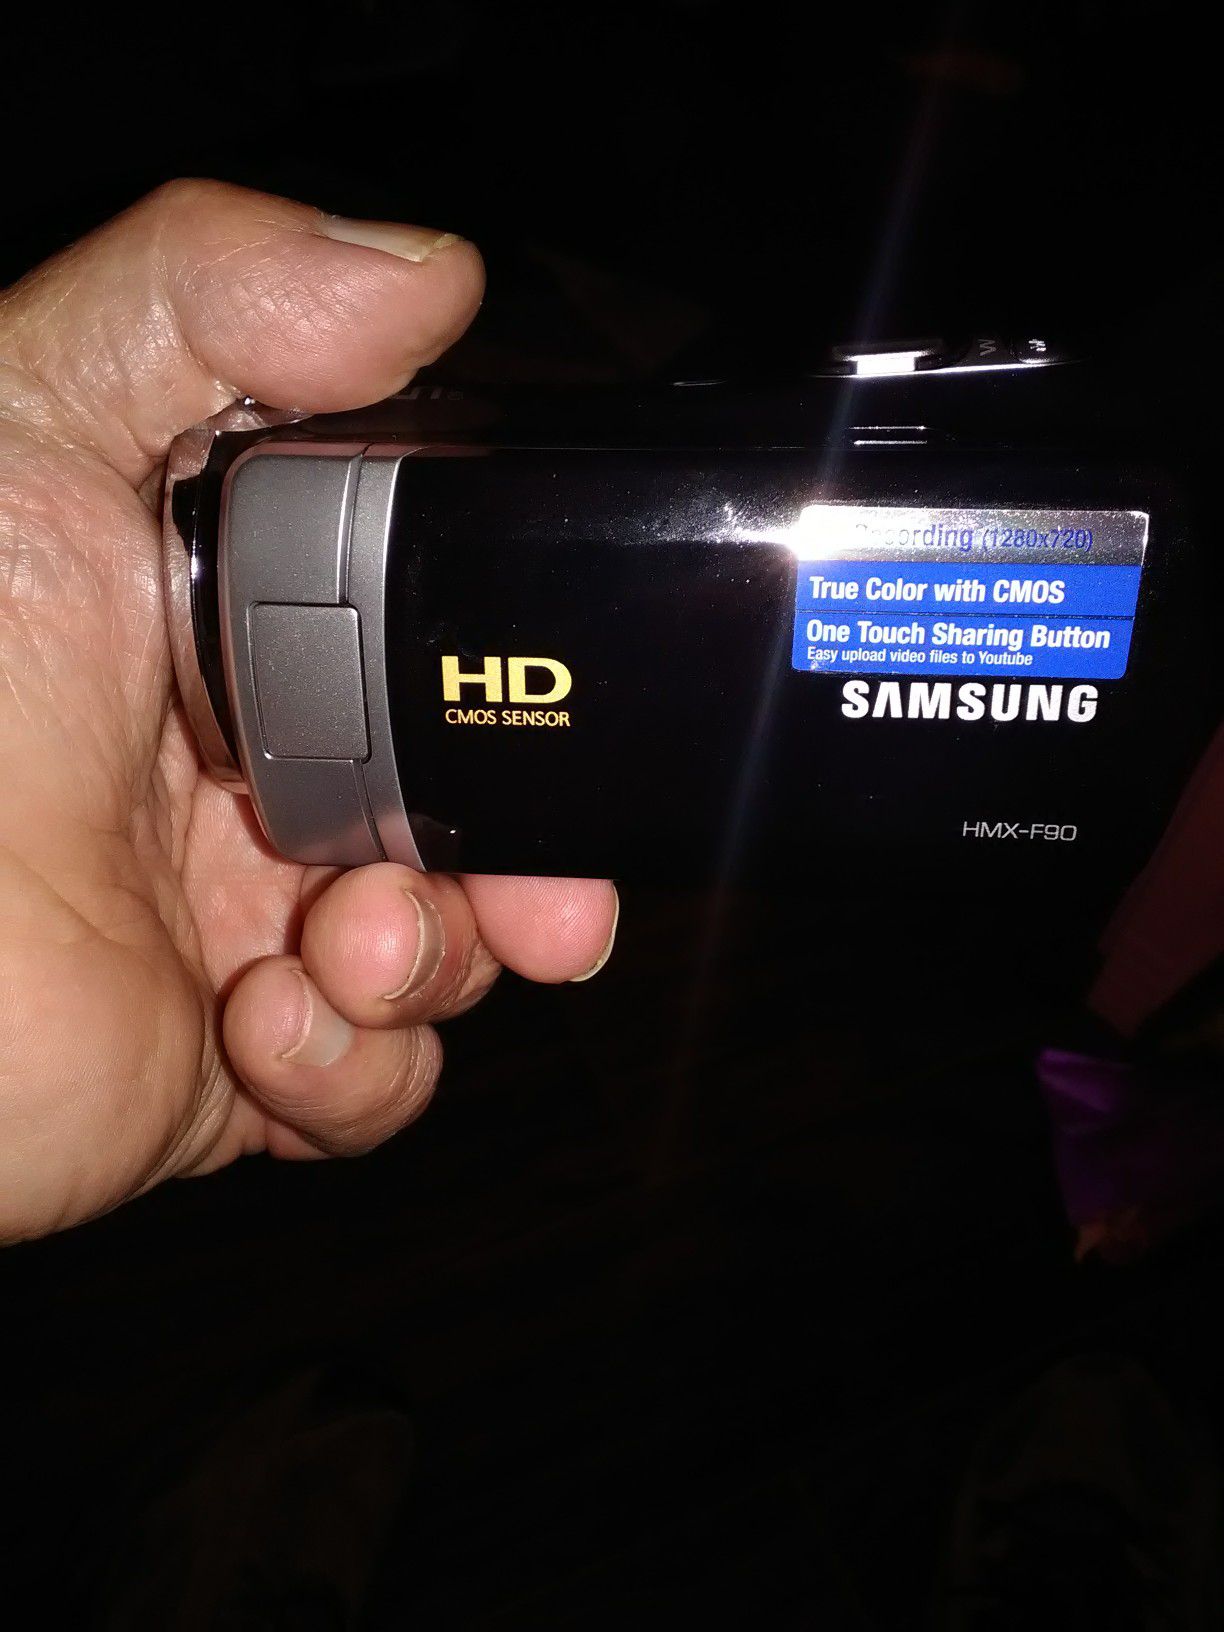 Samsung digital HD recorder camera.